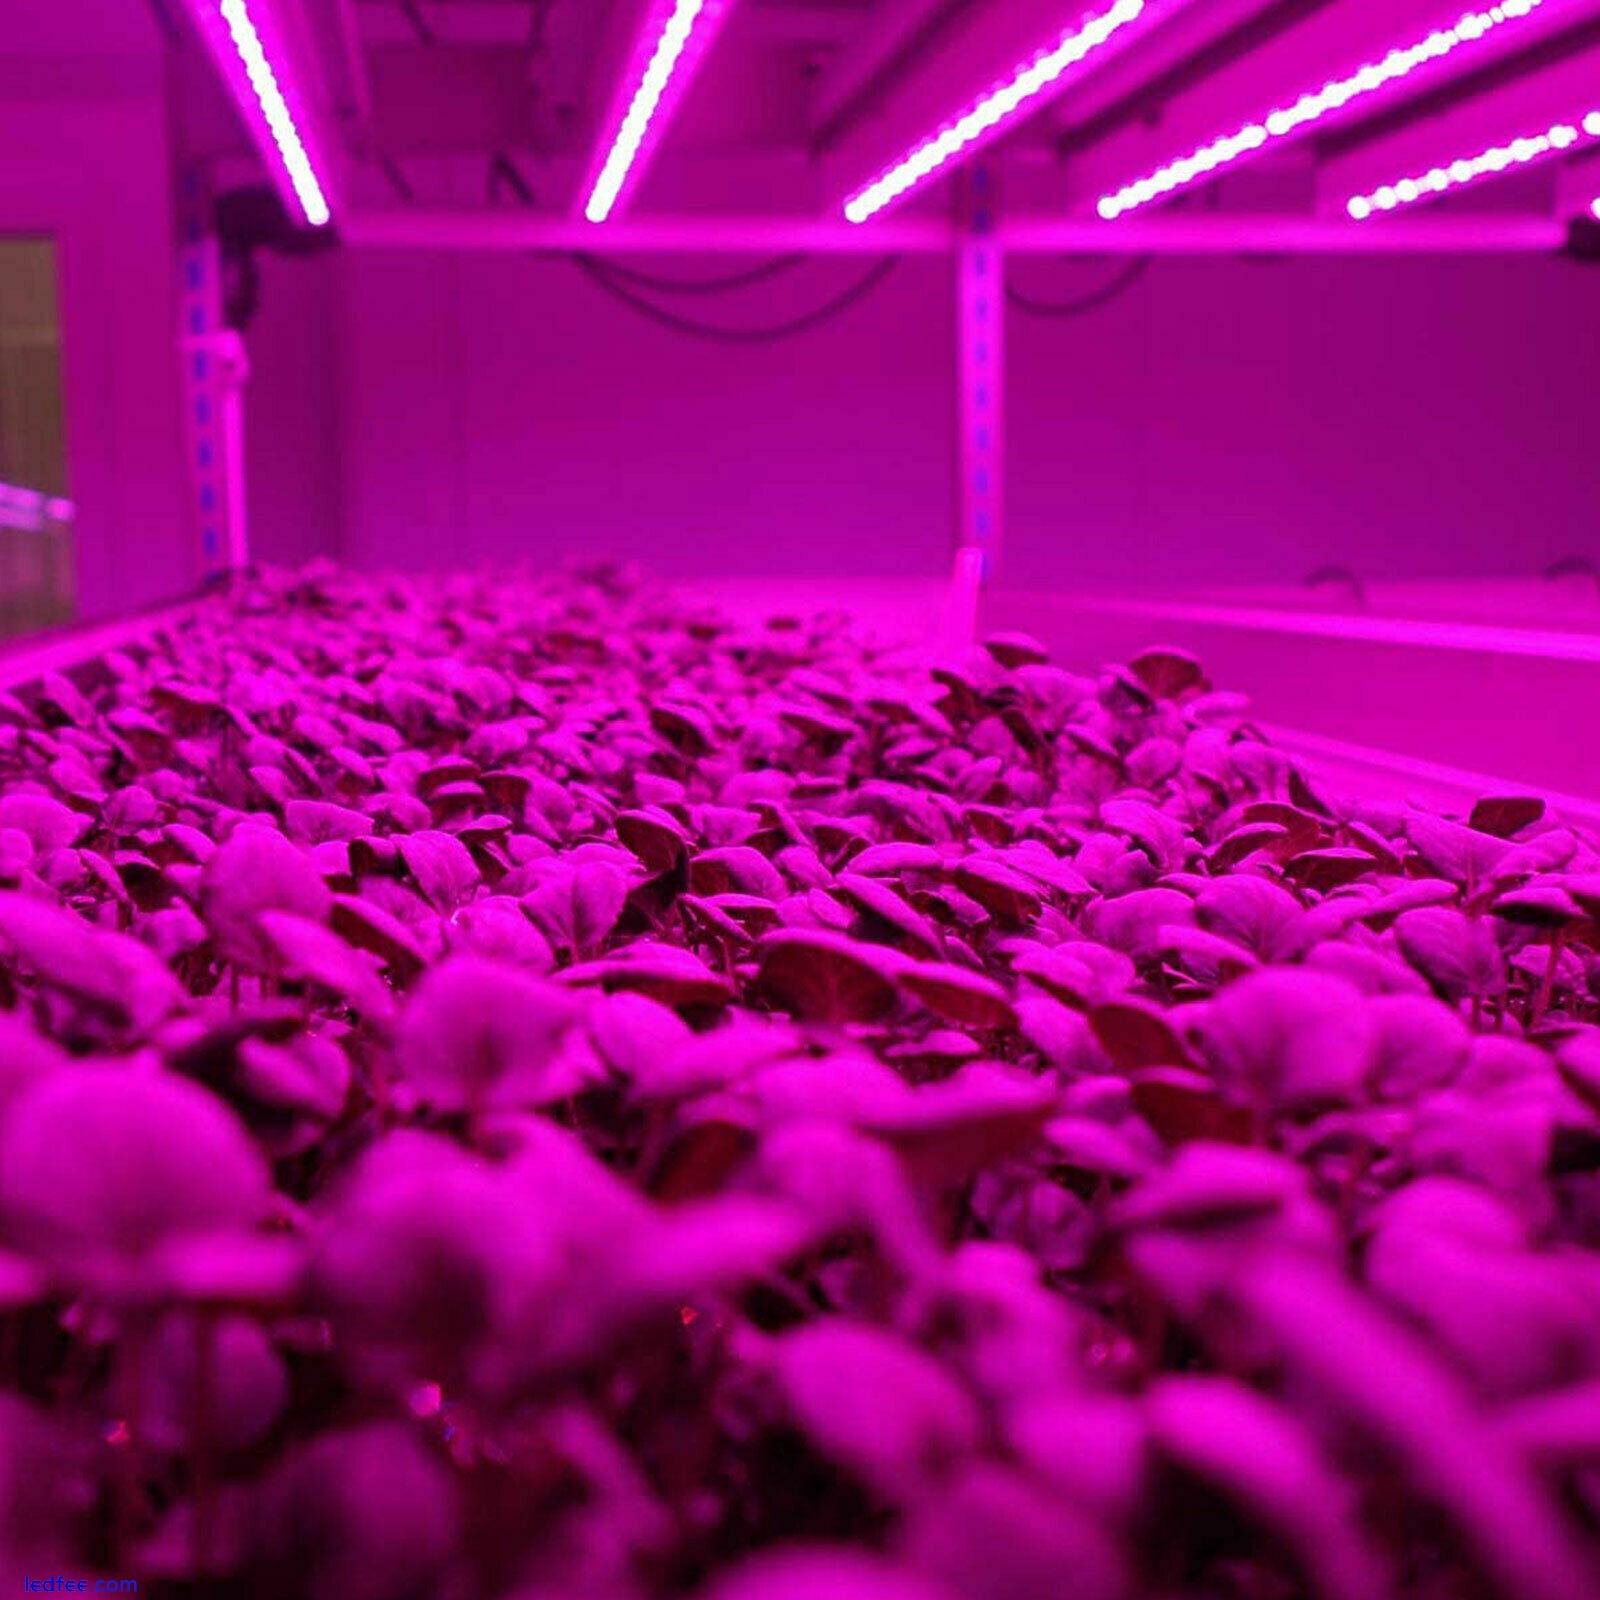 T5 LED Grow Light Tube Strip Full Spectrum Lamp for Indoor Plant Flower Veg Grow 2 